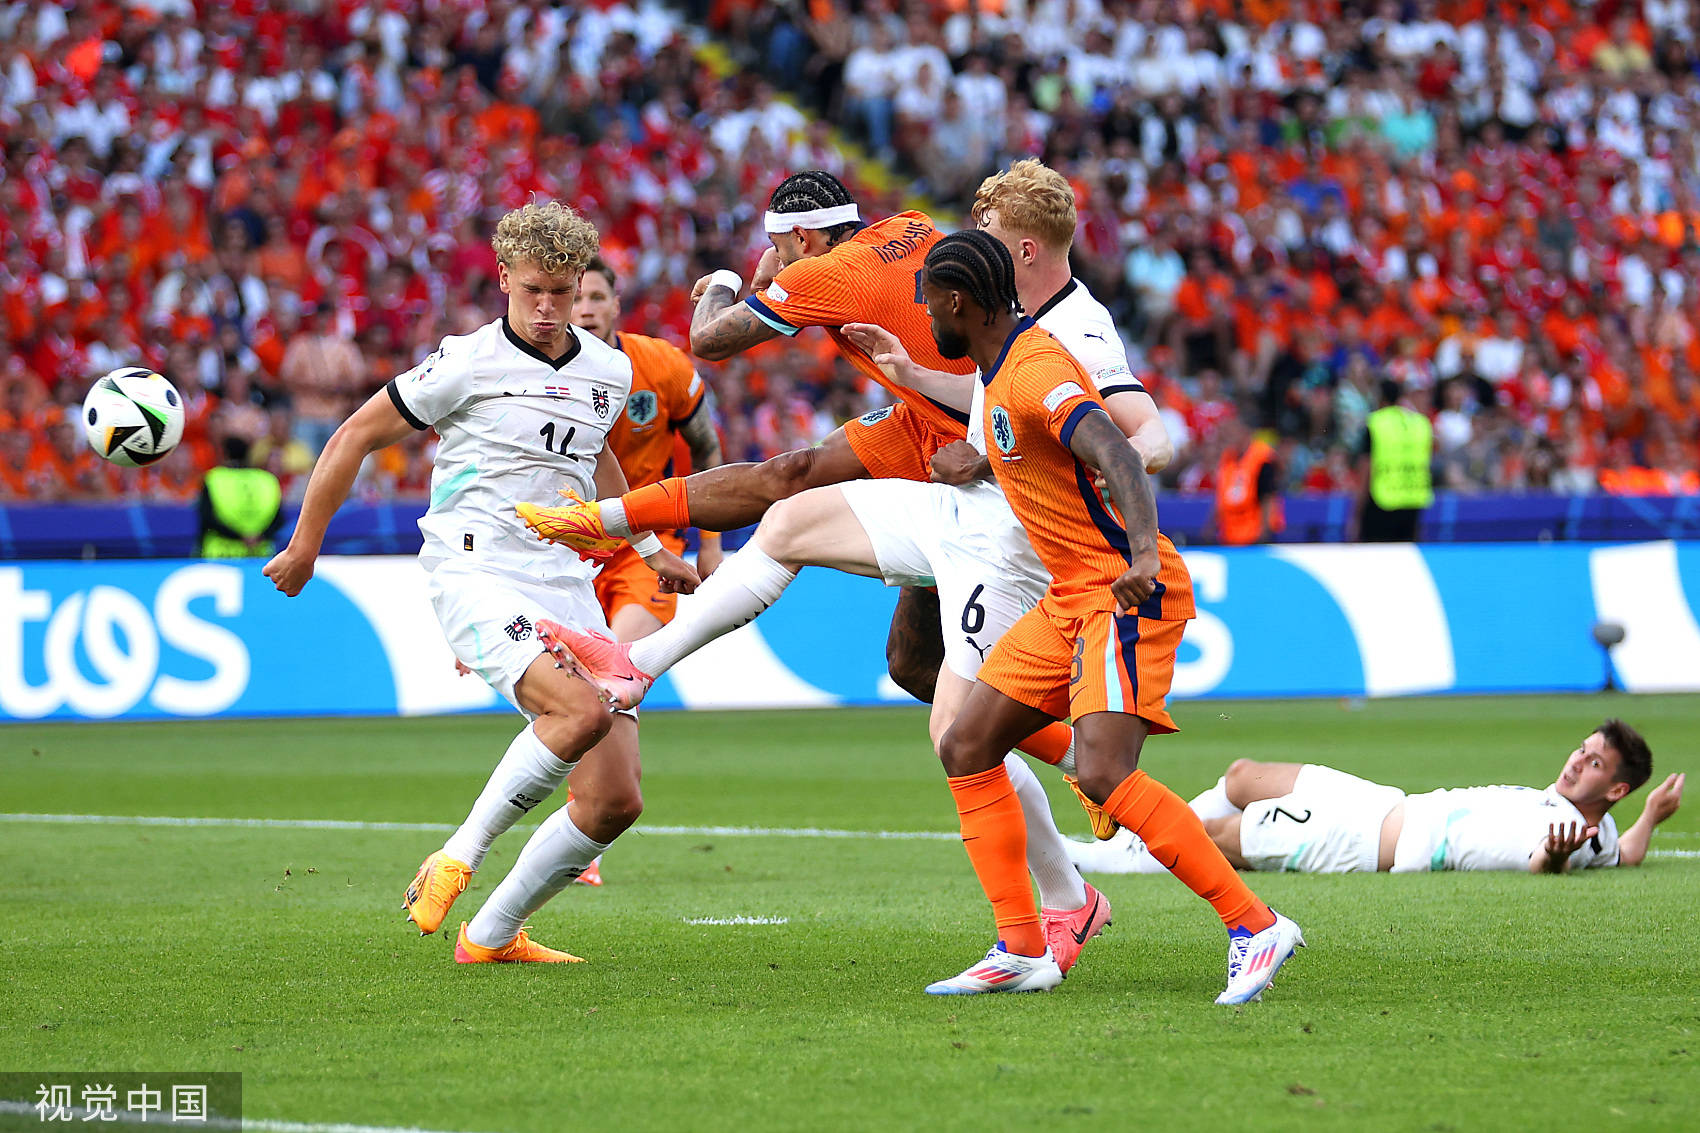 荷兰2-3奥地利_欧洲杯-马伦攻入历史最快乌龙球 奥地利3-2荷兰头名出线